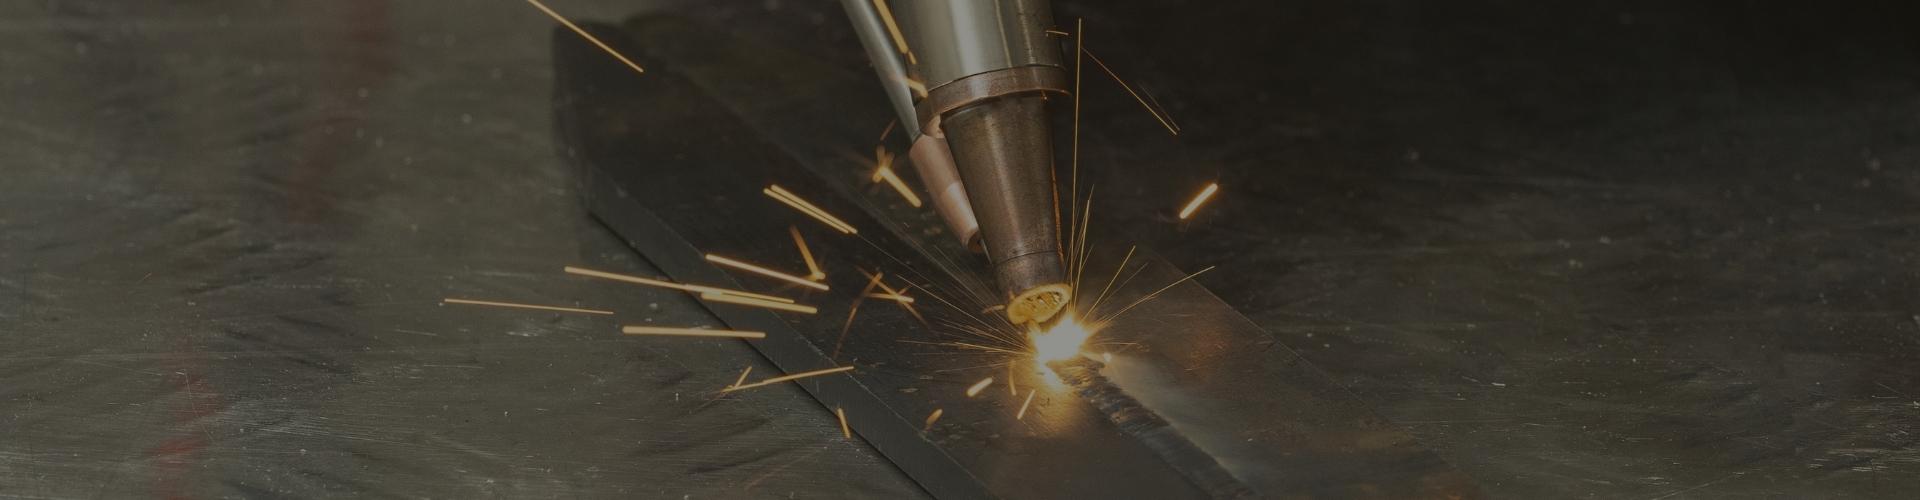 1500W laser welding machine page banner